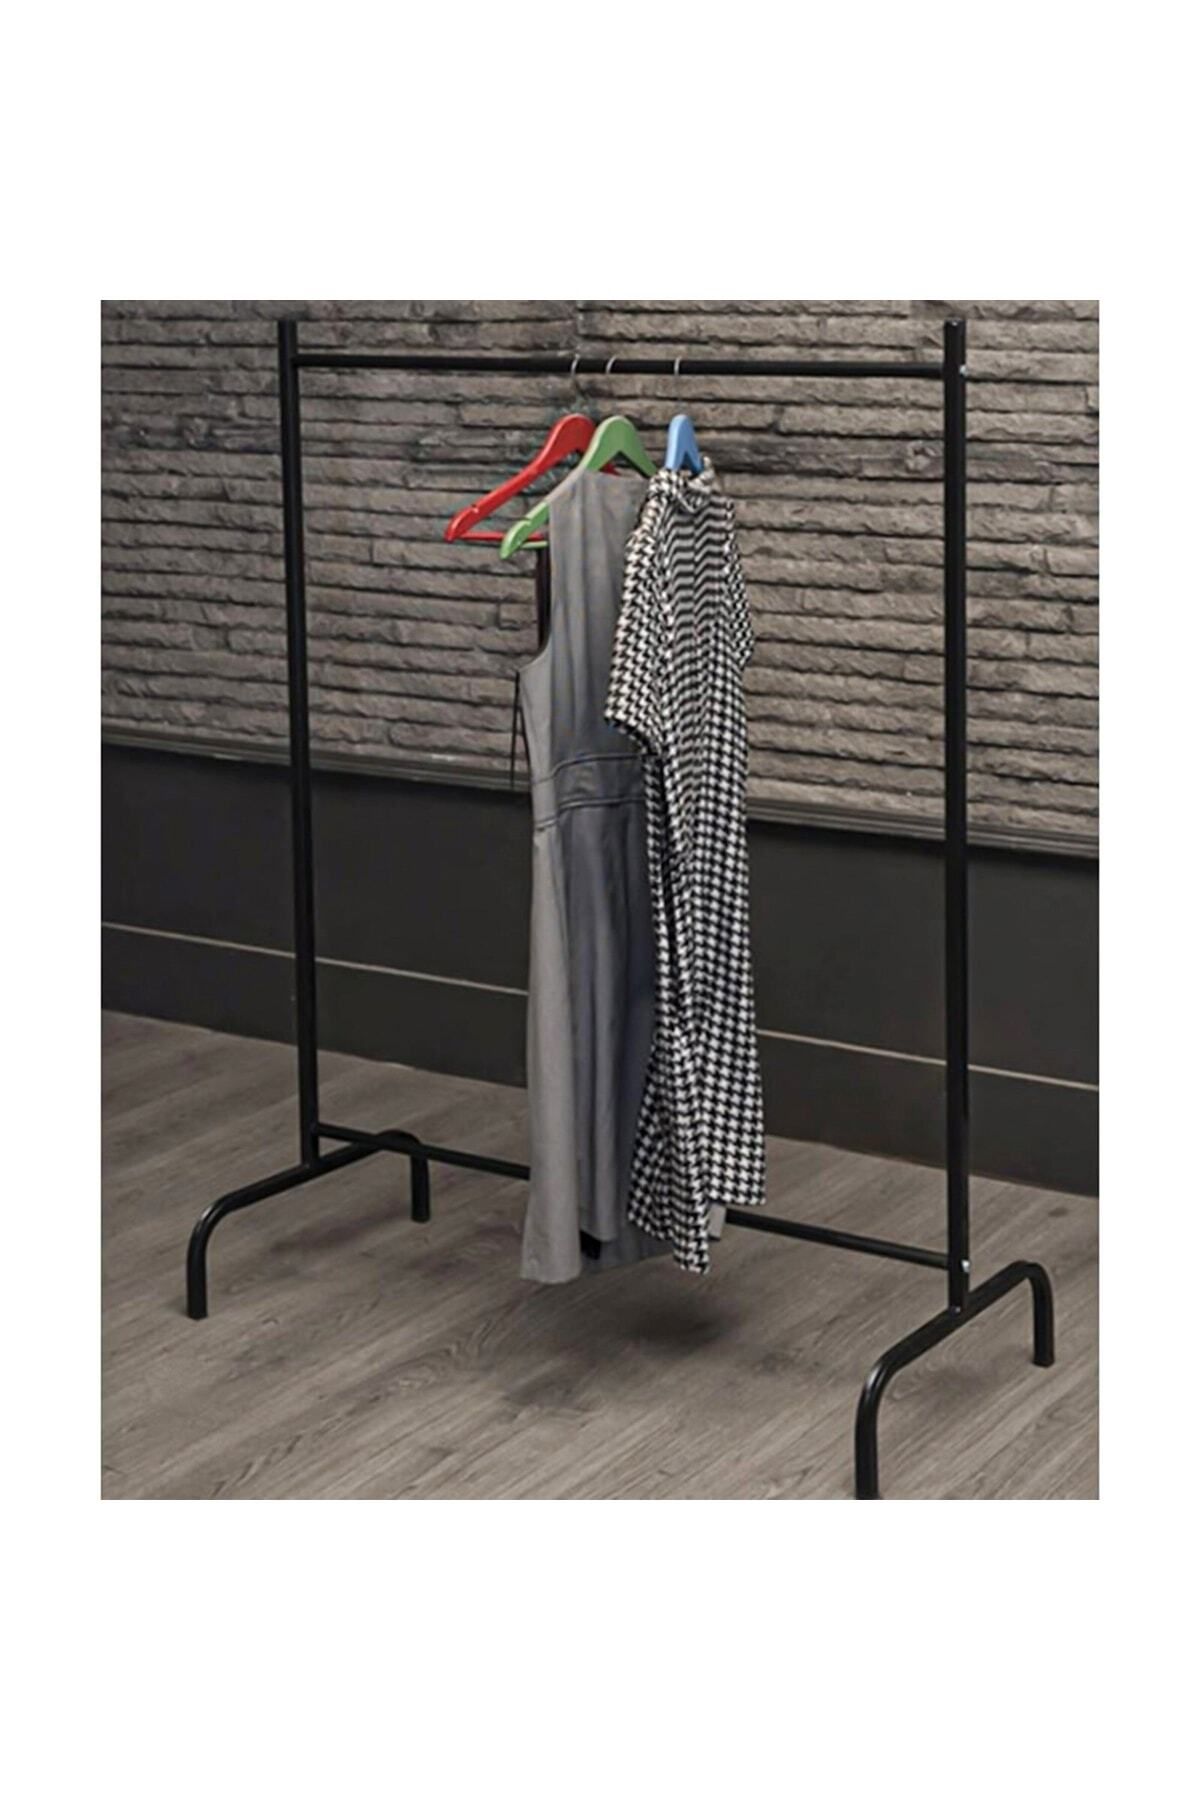 Morpanya Metal Elbise Askısı Konfeksiyon Askısı Kıyafet Elbise Askılığı Ayaklı Askılık